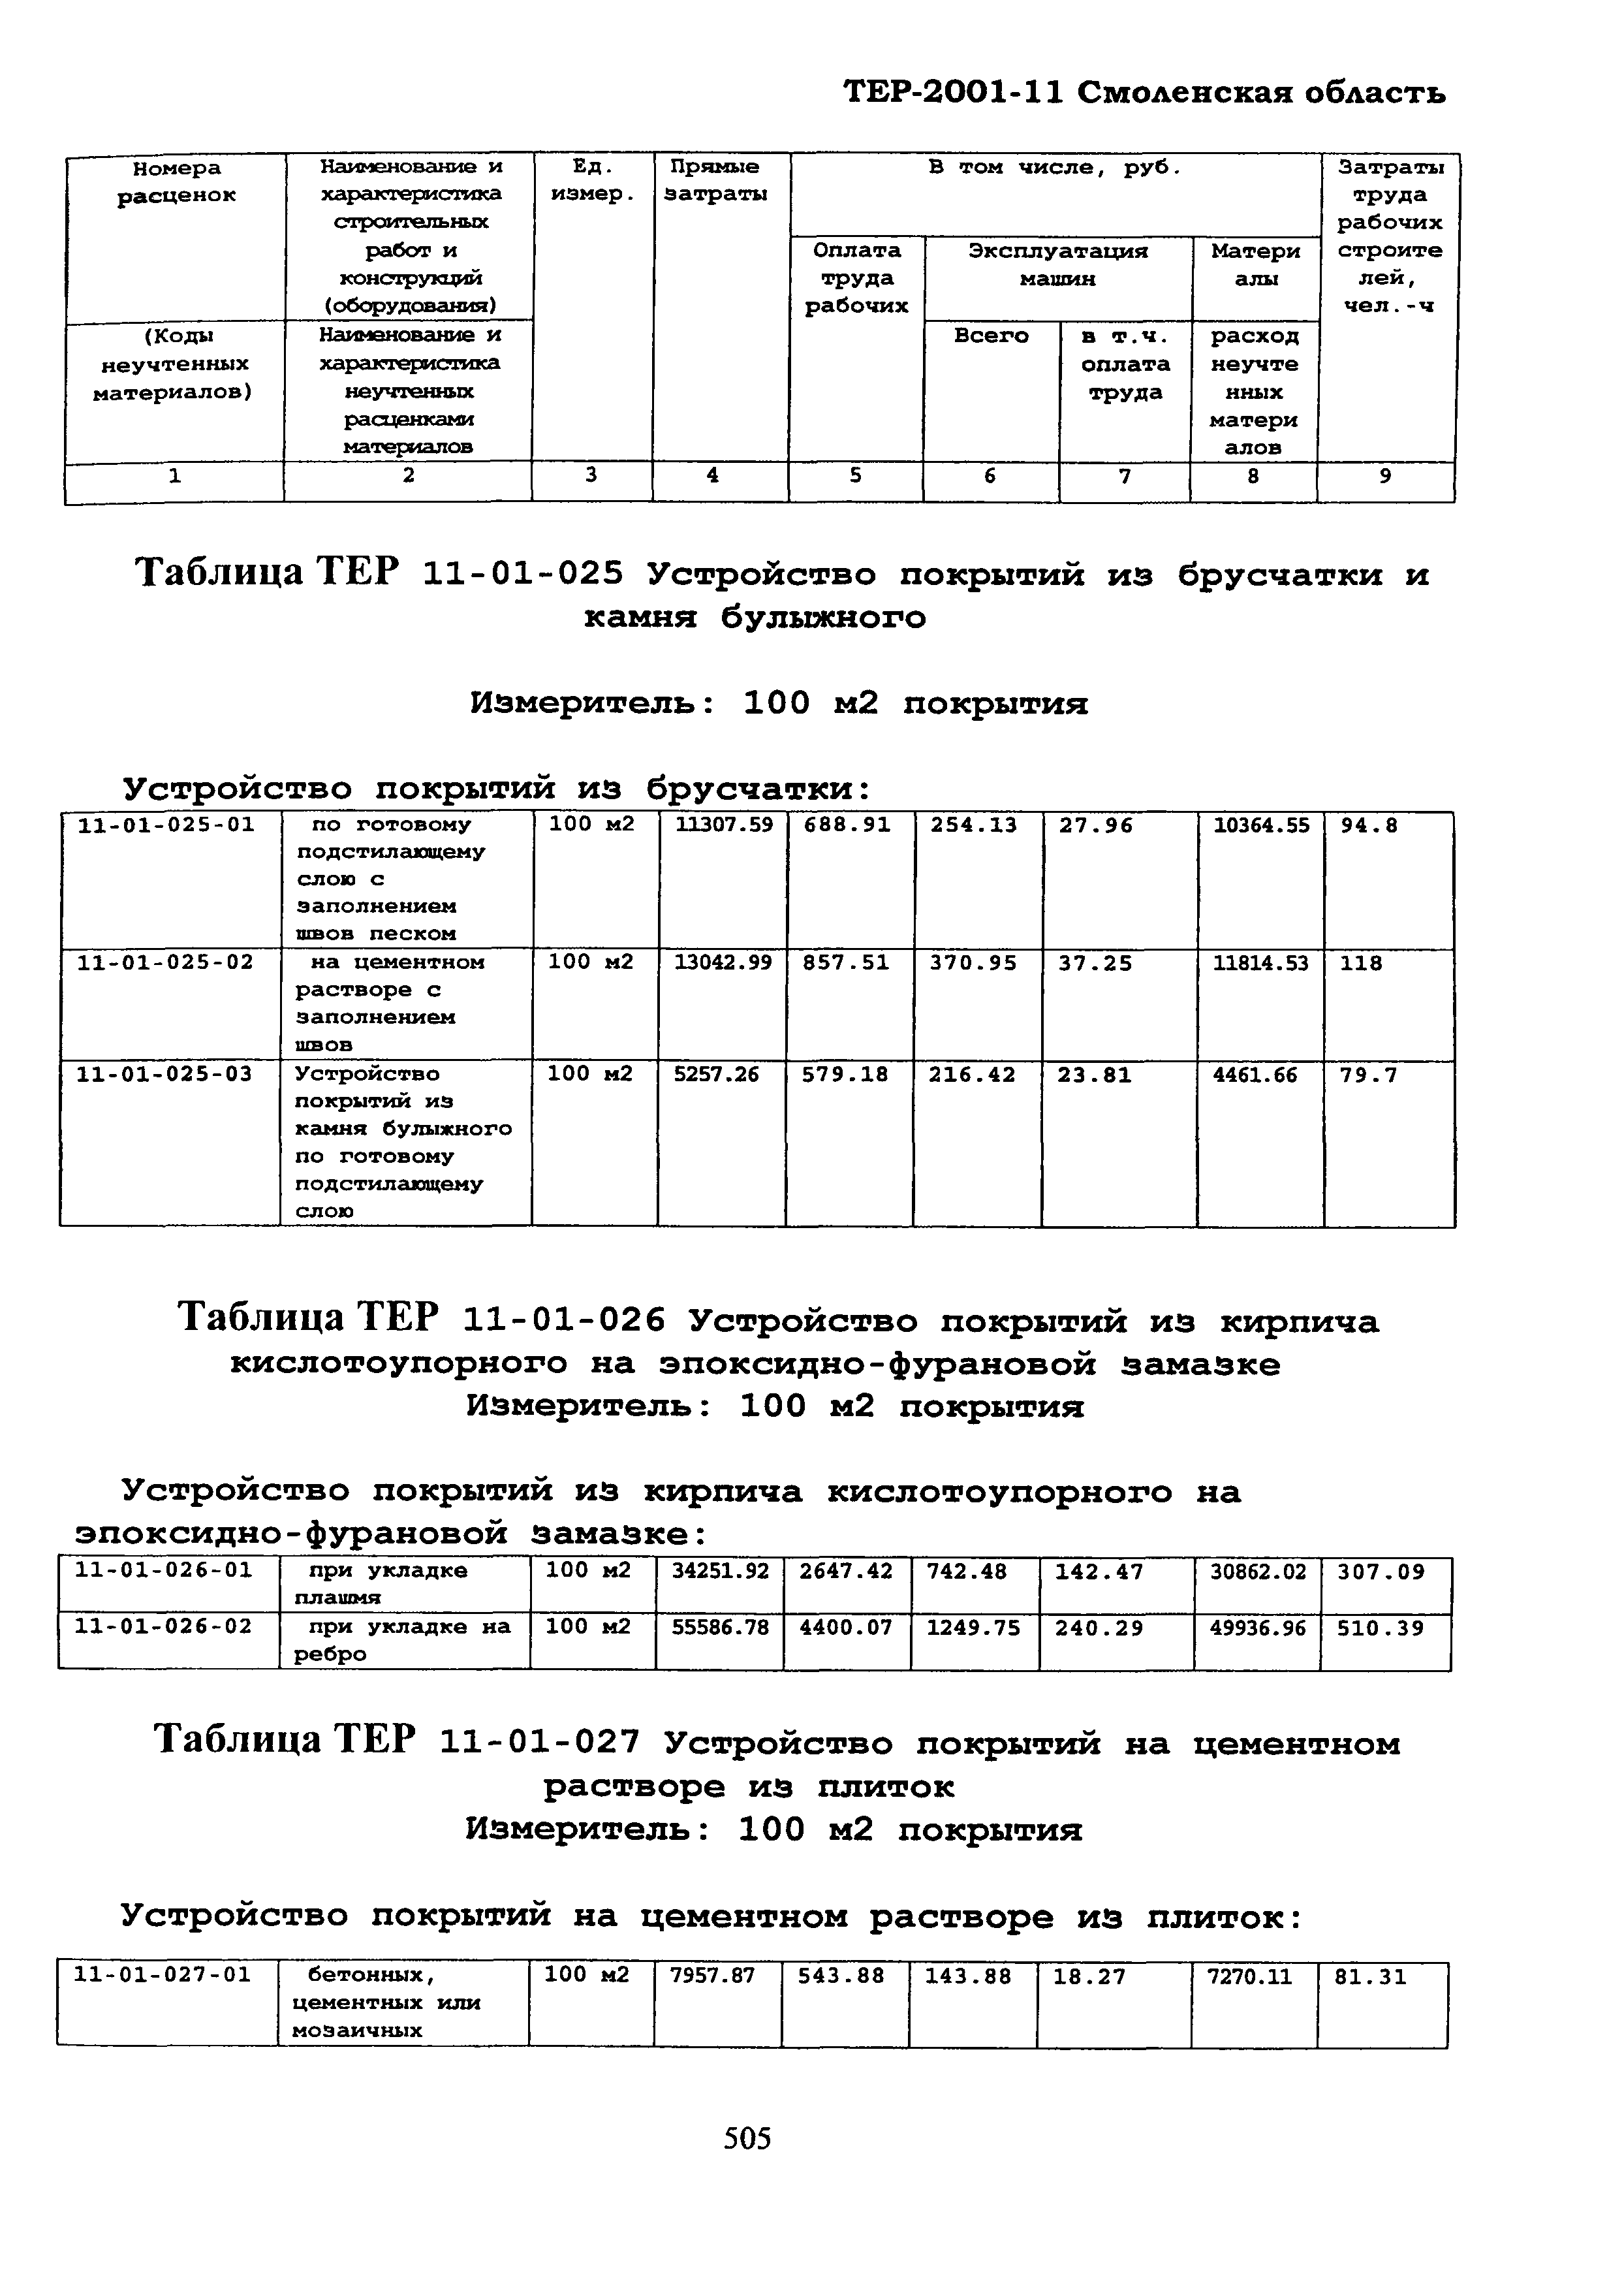 ТЕР Смоленская область 2001-11